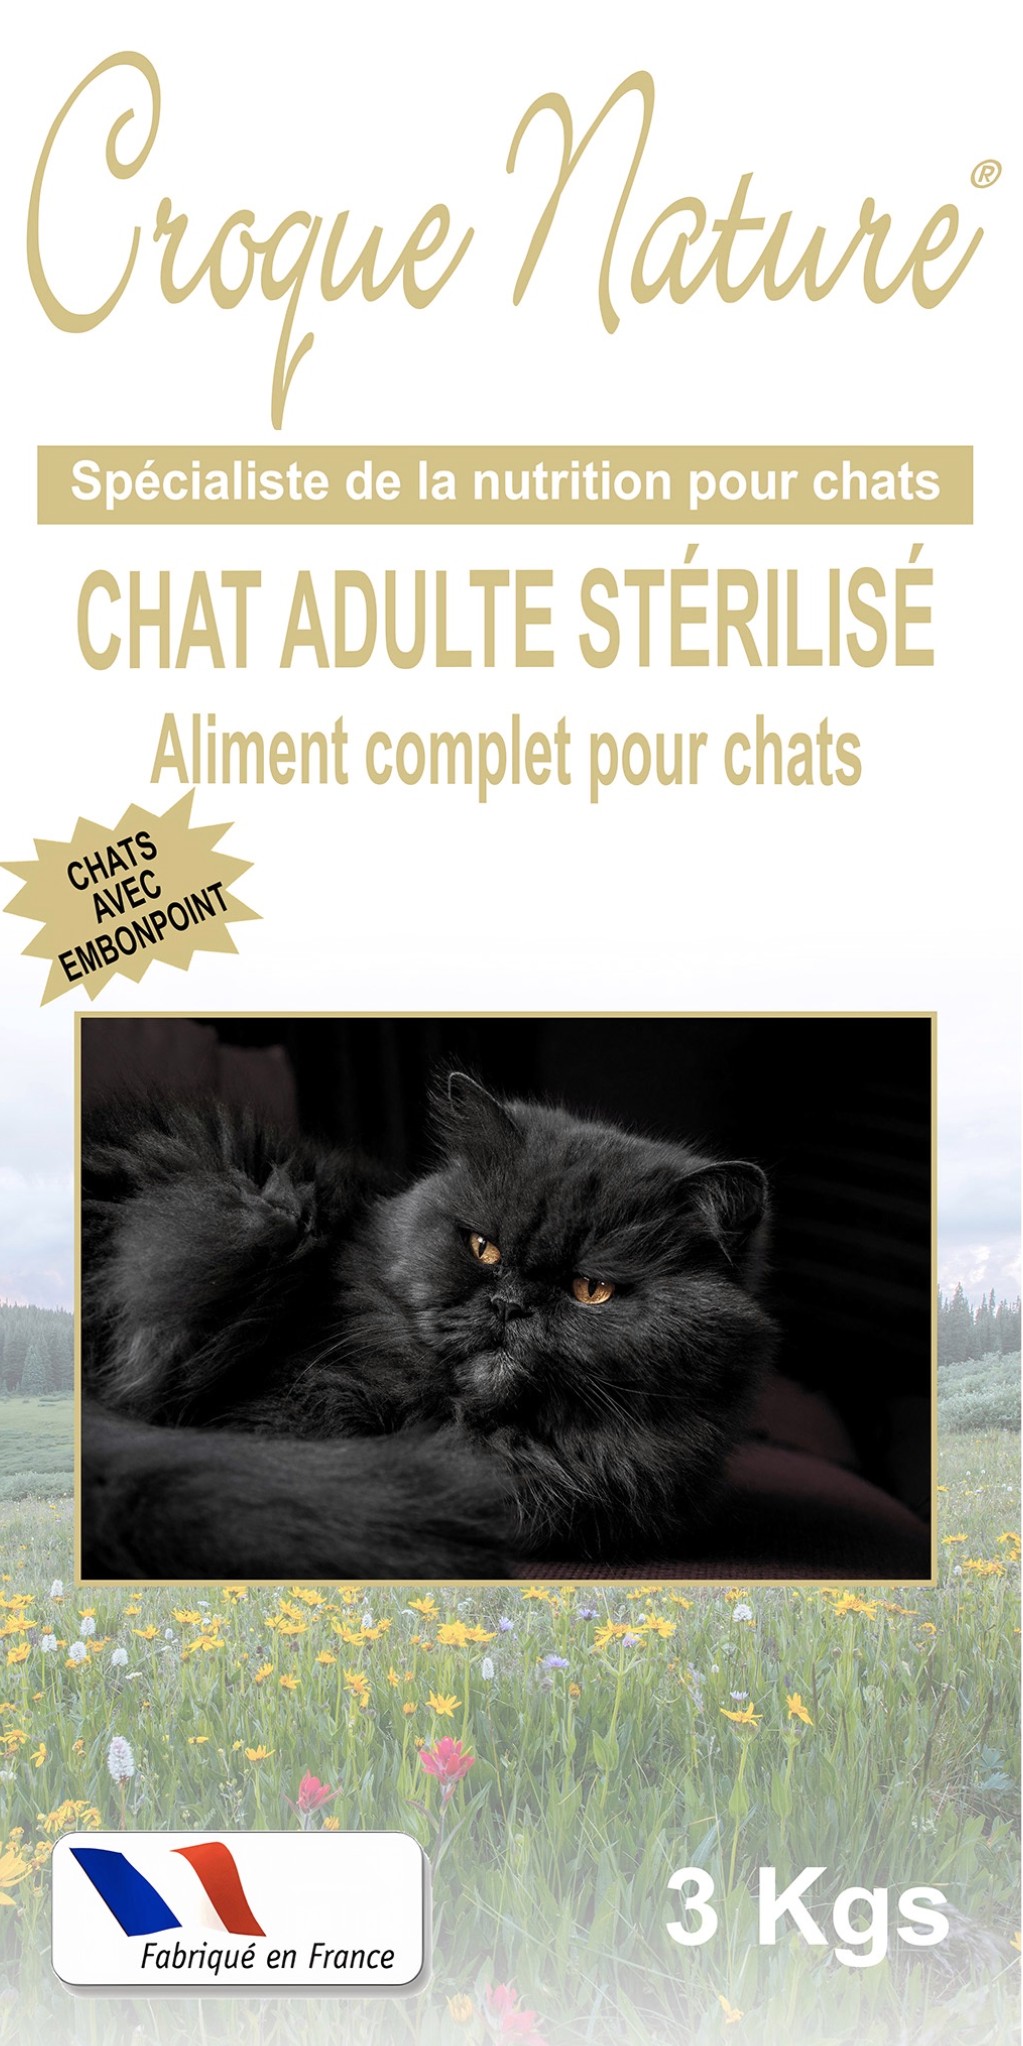 Croquettes Chat Adulte Stérilisé PARIS